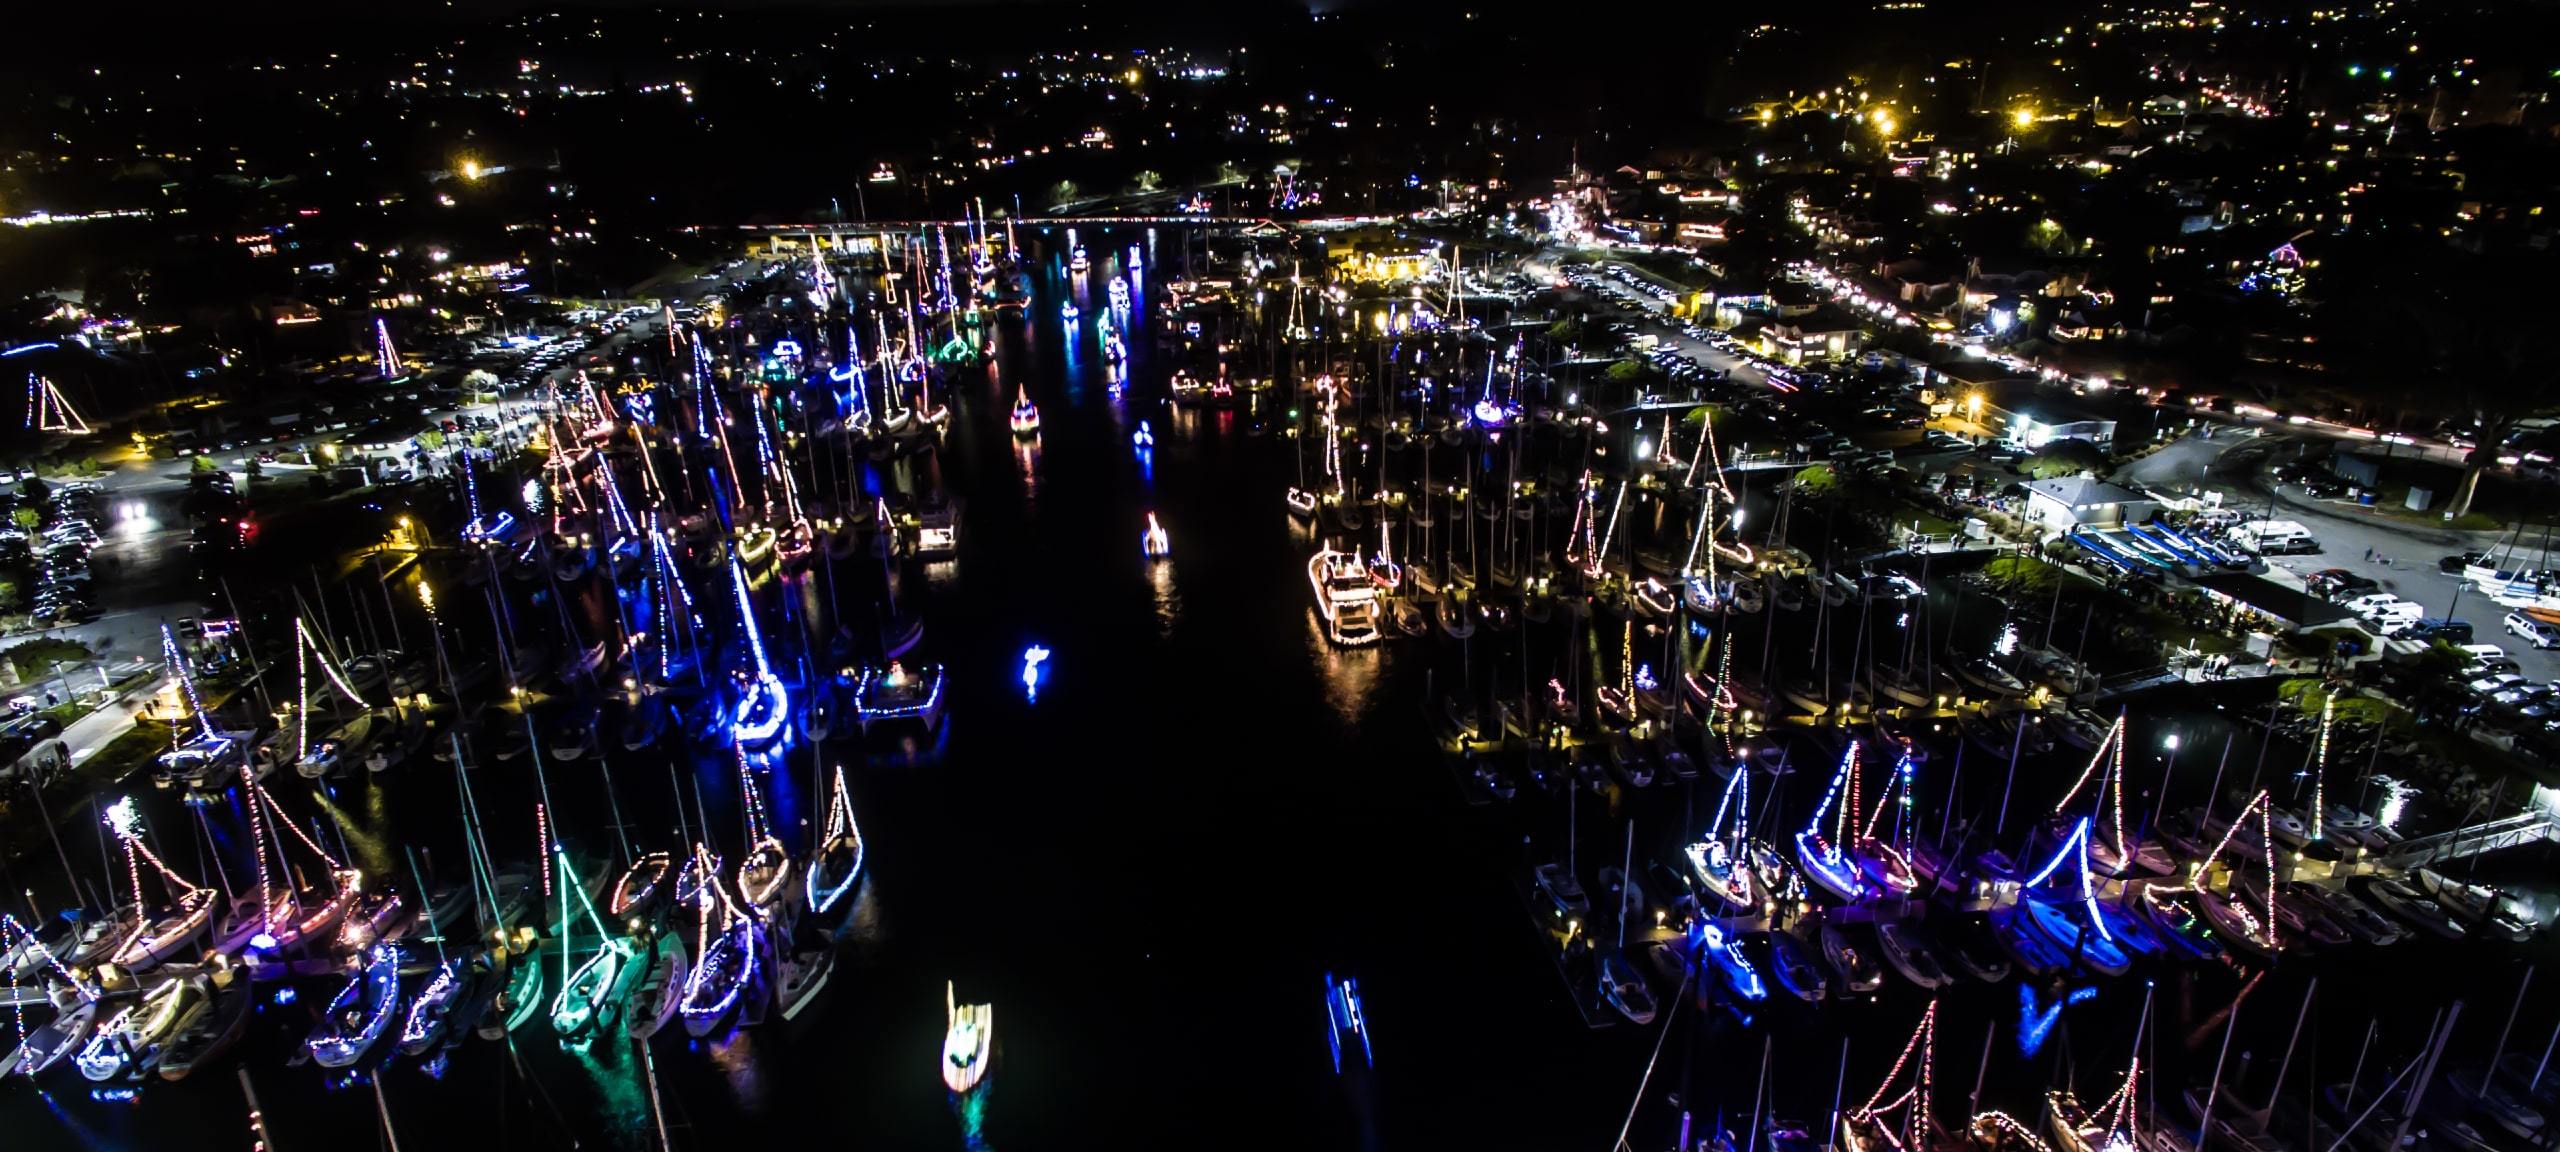 Holiday boats with lights at night in Santa Cruz marina